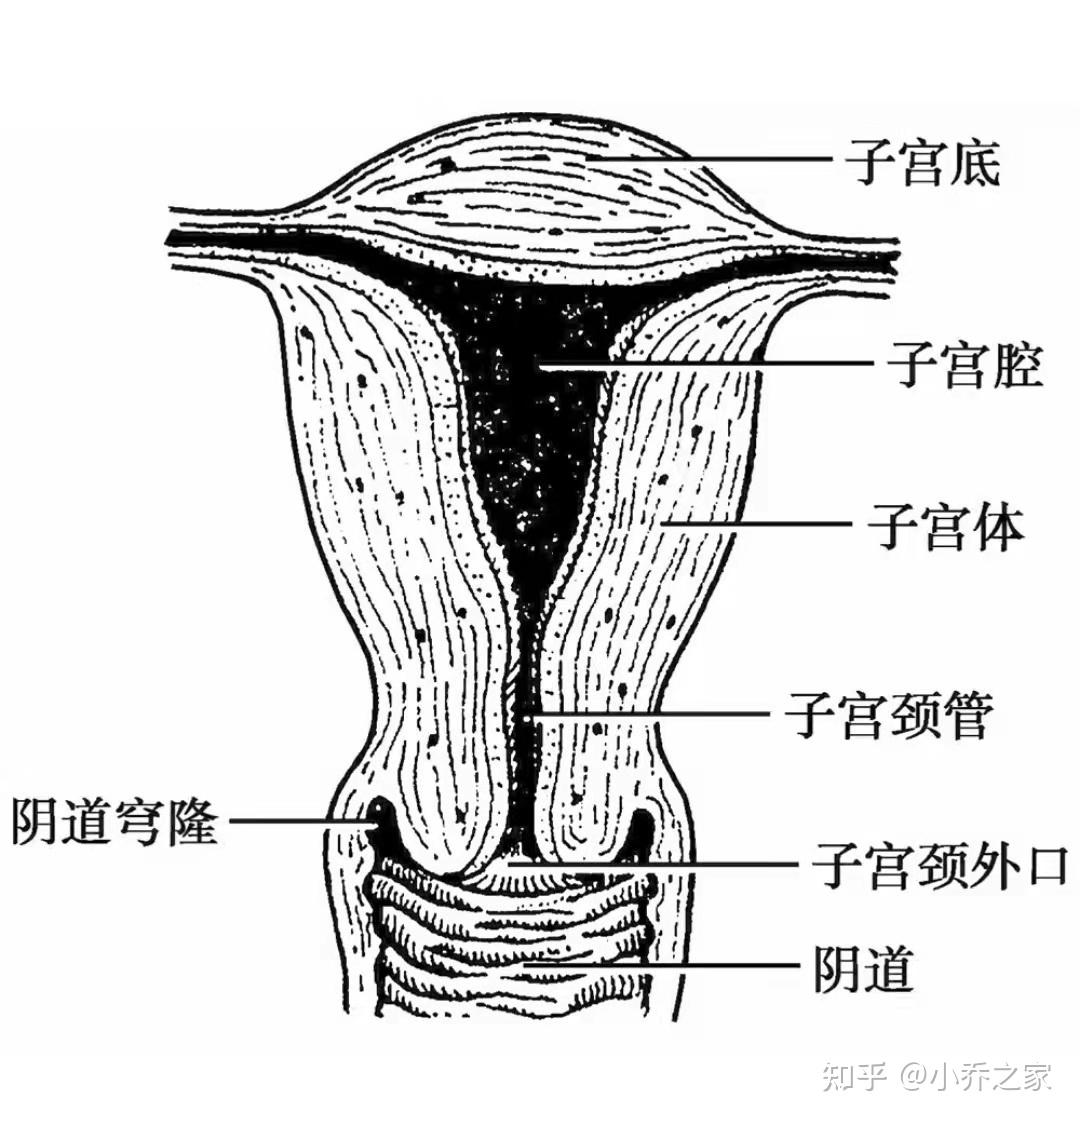 子宫,卵巢和乳腺等,结构和位置都很特殊,如:阴道比较短,又与尿道肛门